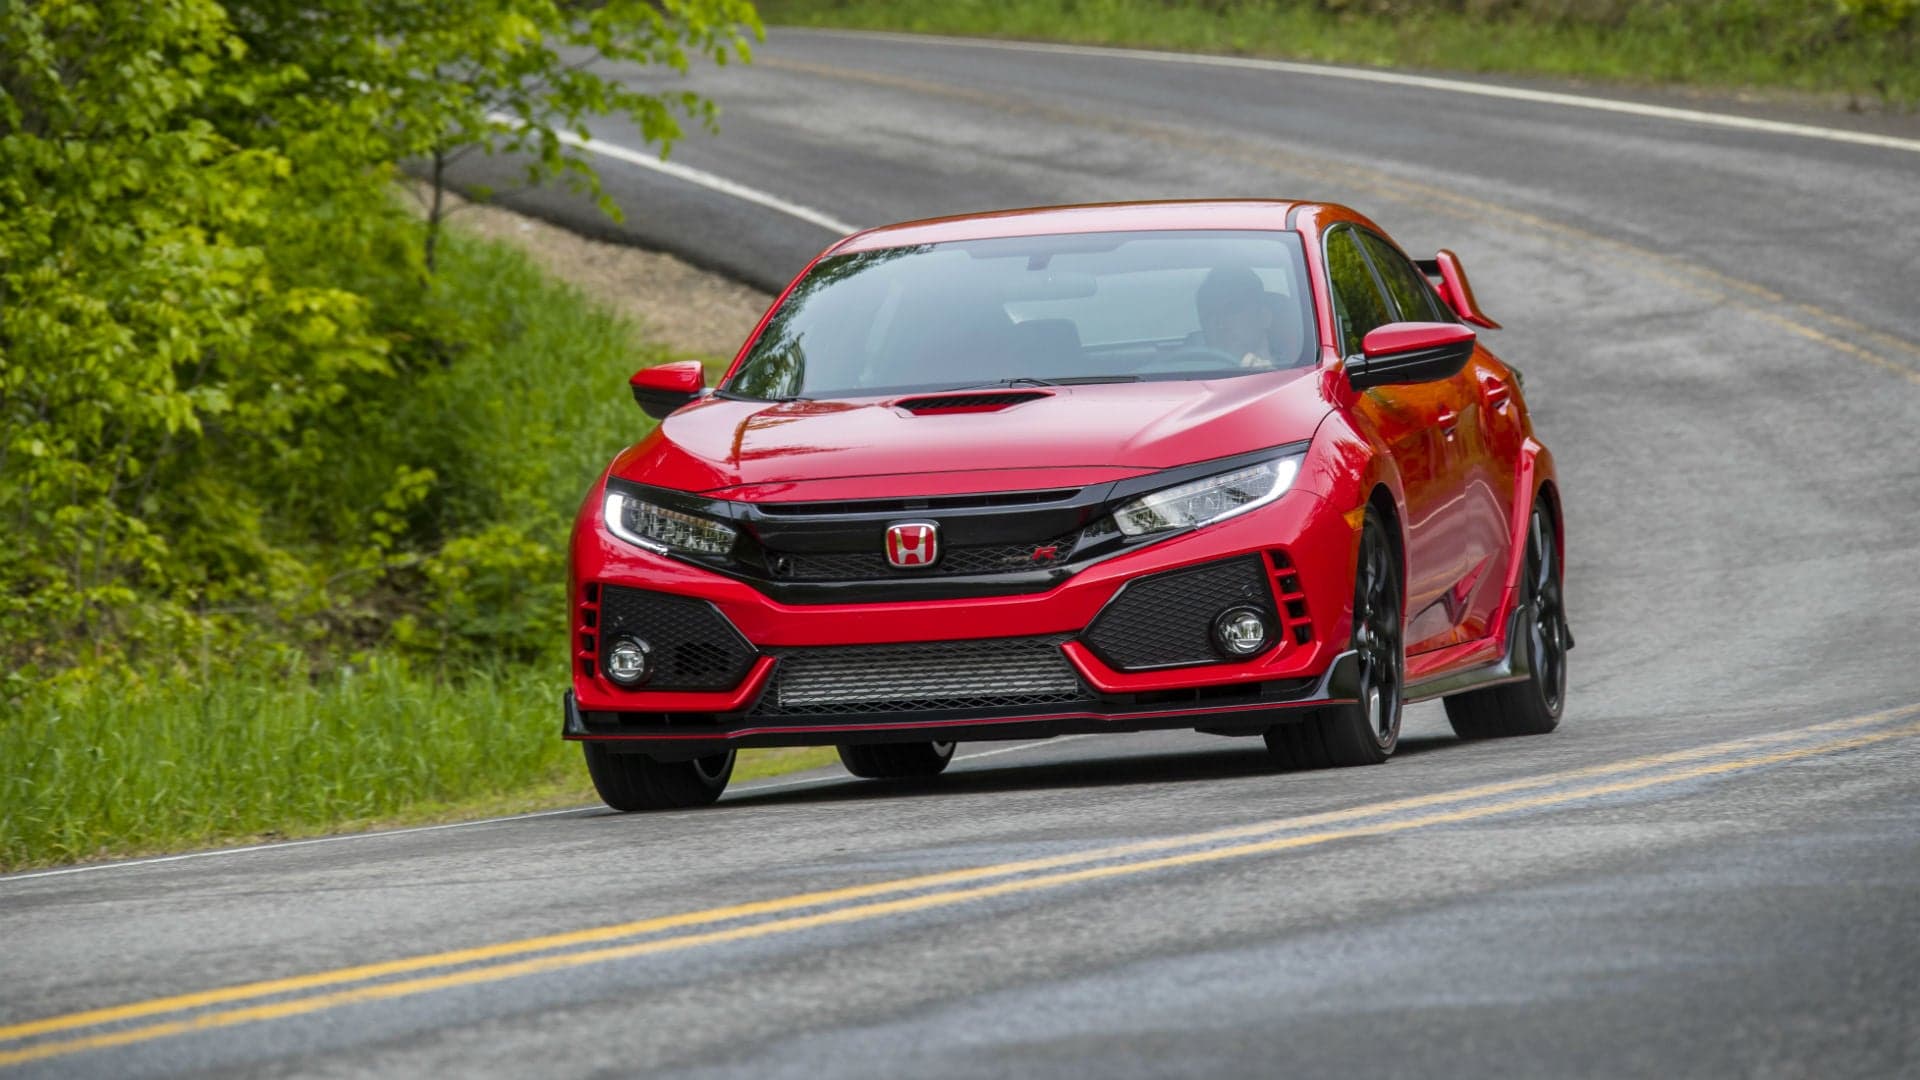 2018 Honda Civic Type R Hits Dealerships